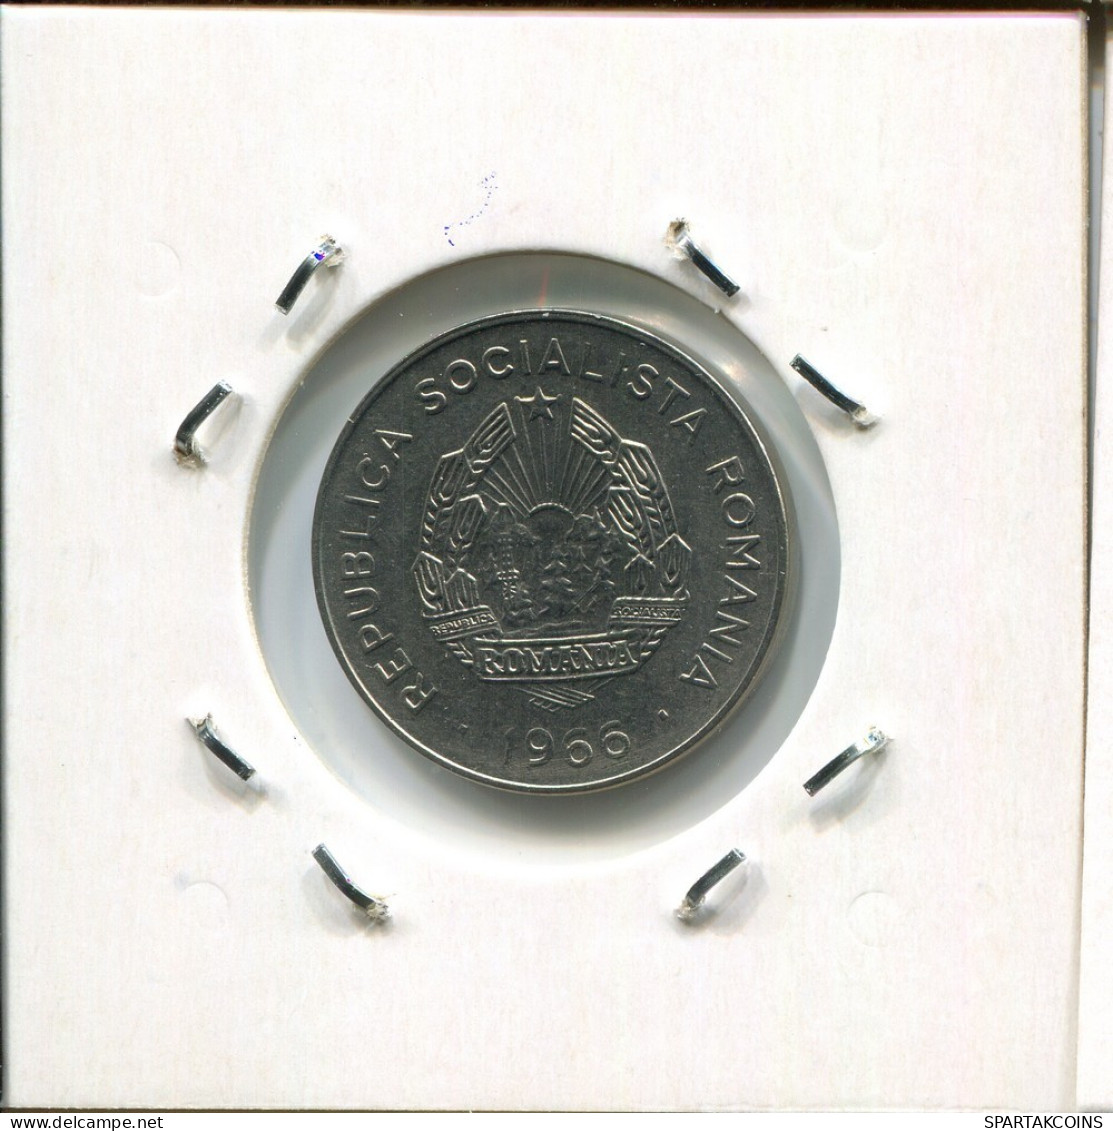 25 BANI 1966 ROMANIA Coin #AR376.U.A - Rumänien